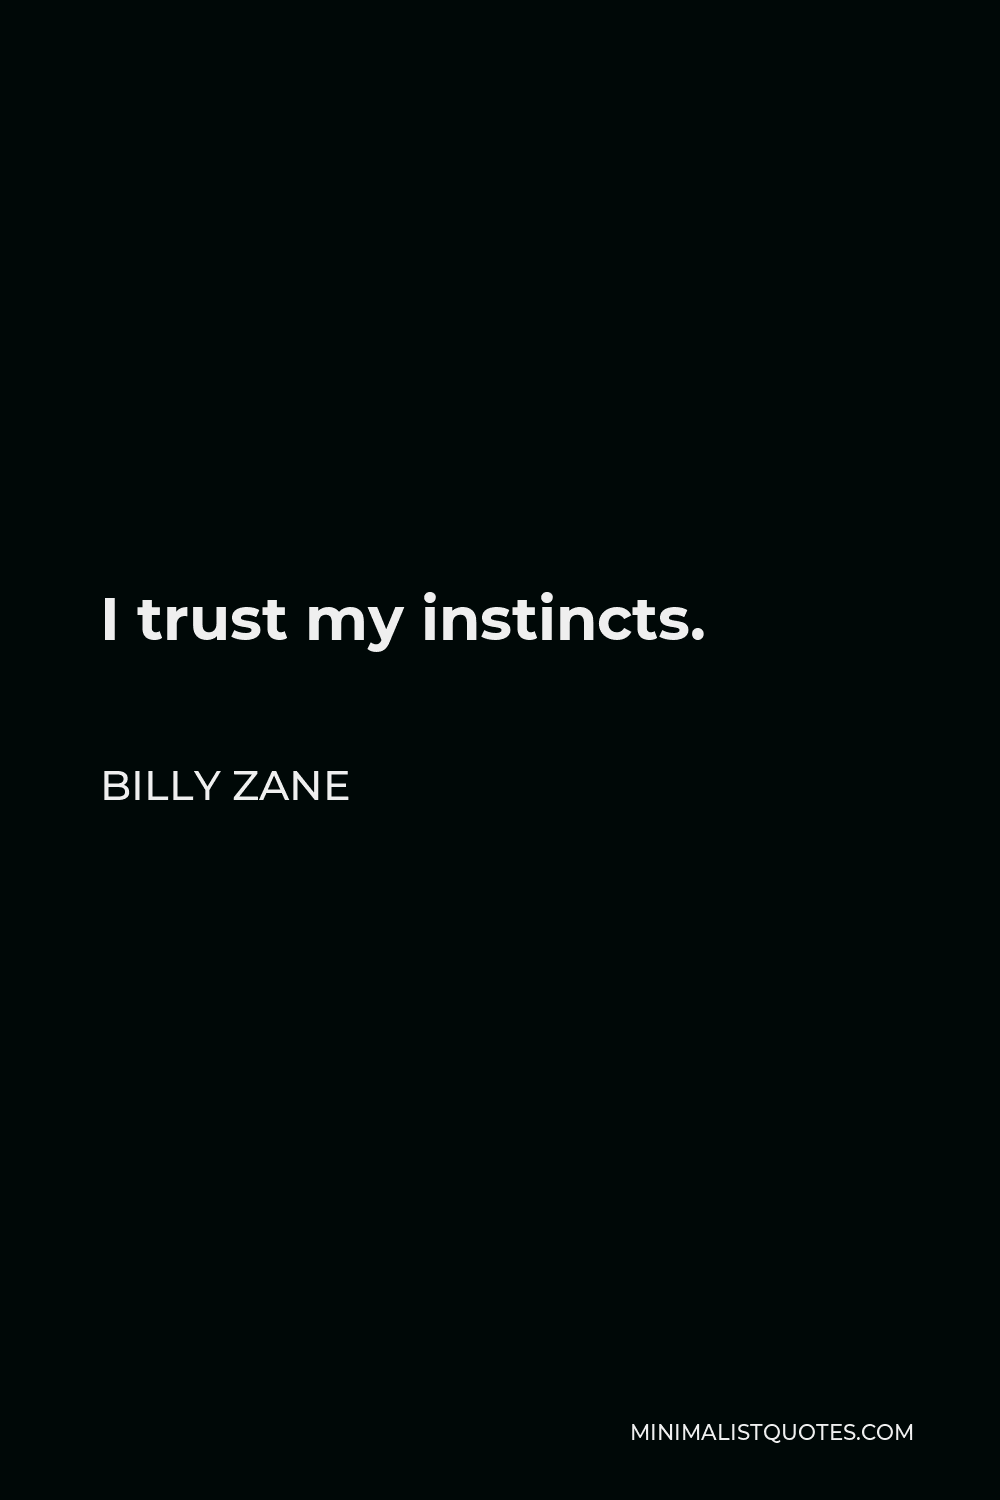 Billy Zane Quote - I trust my instincts.